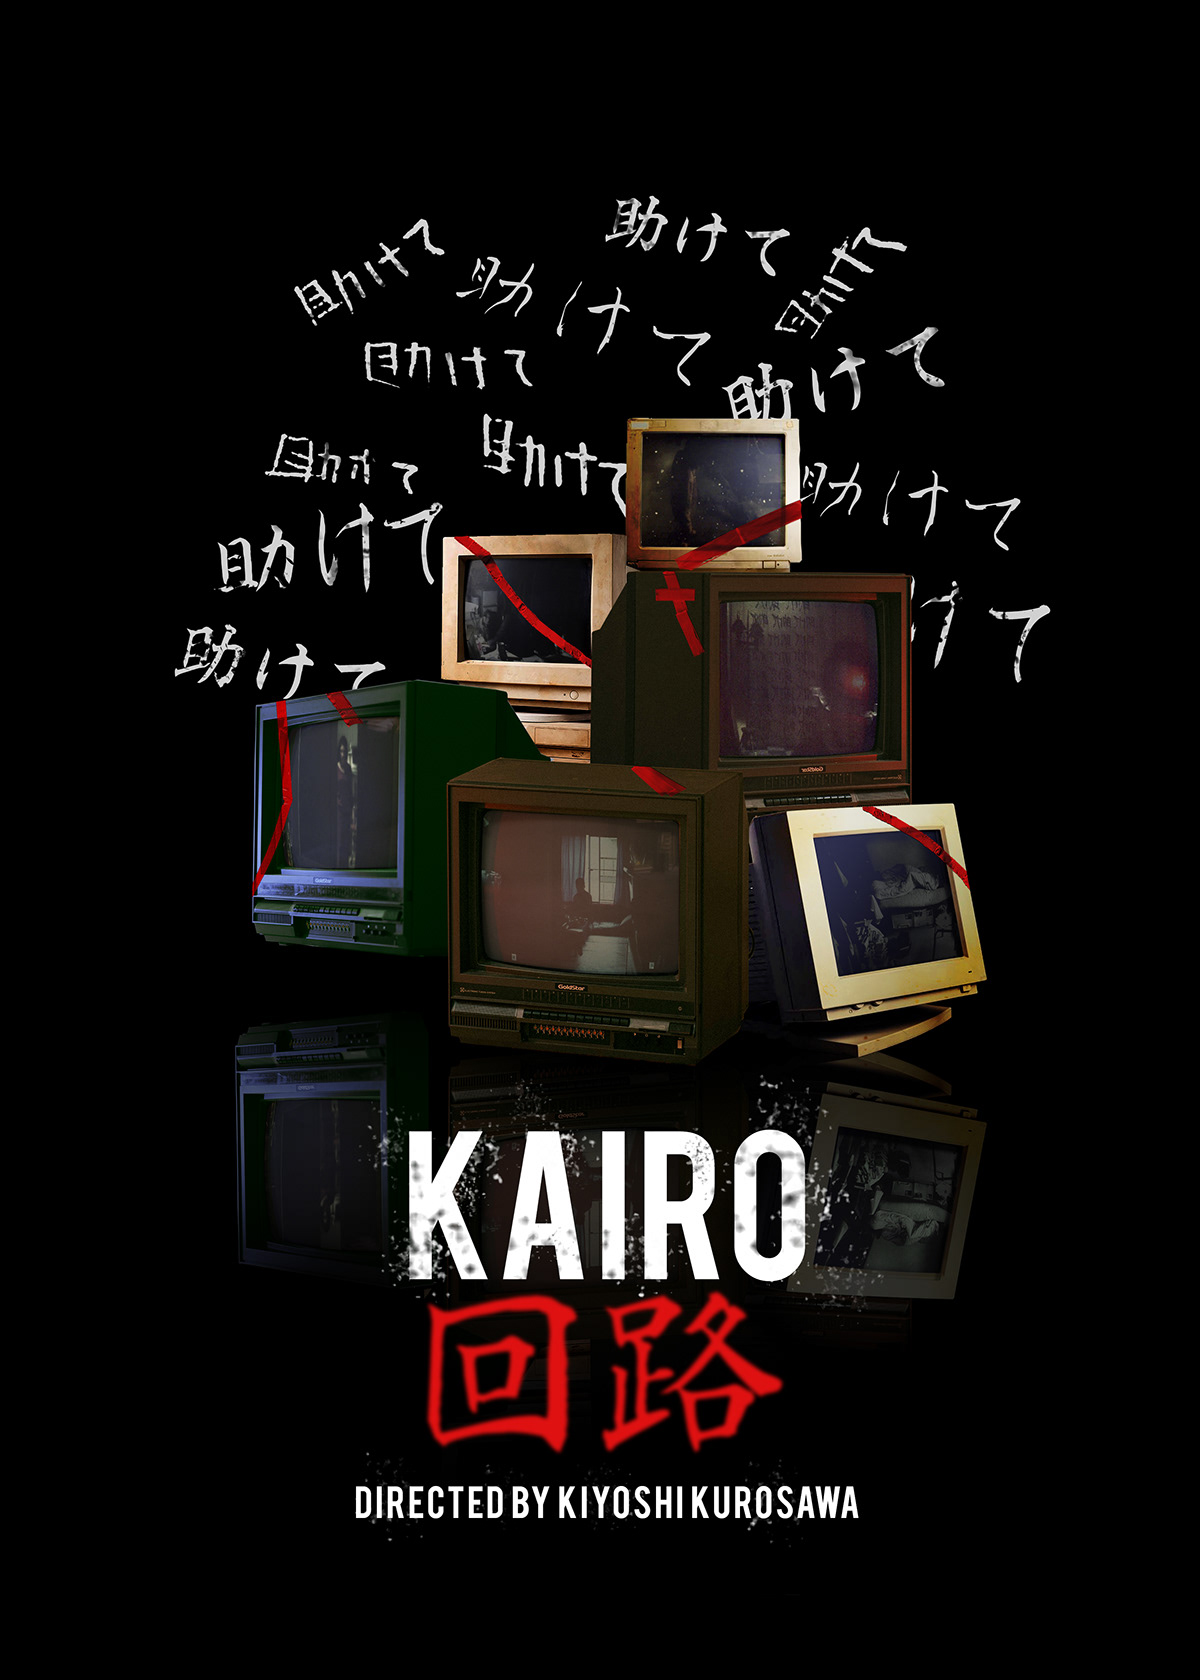 Kairo pulse Japanese Horror Movies japan Film   film poster 2000s horror alternate poster